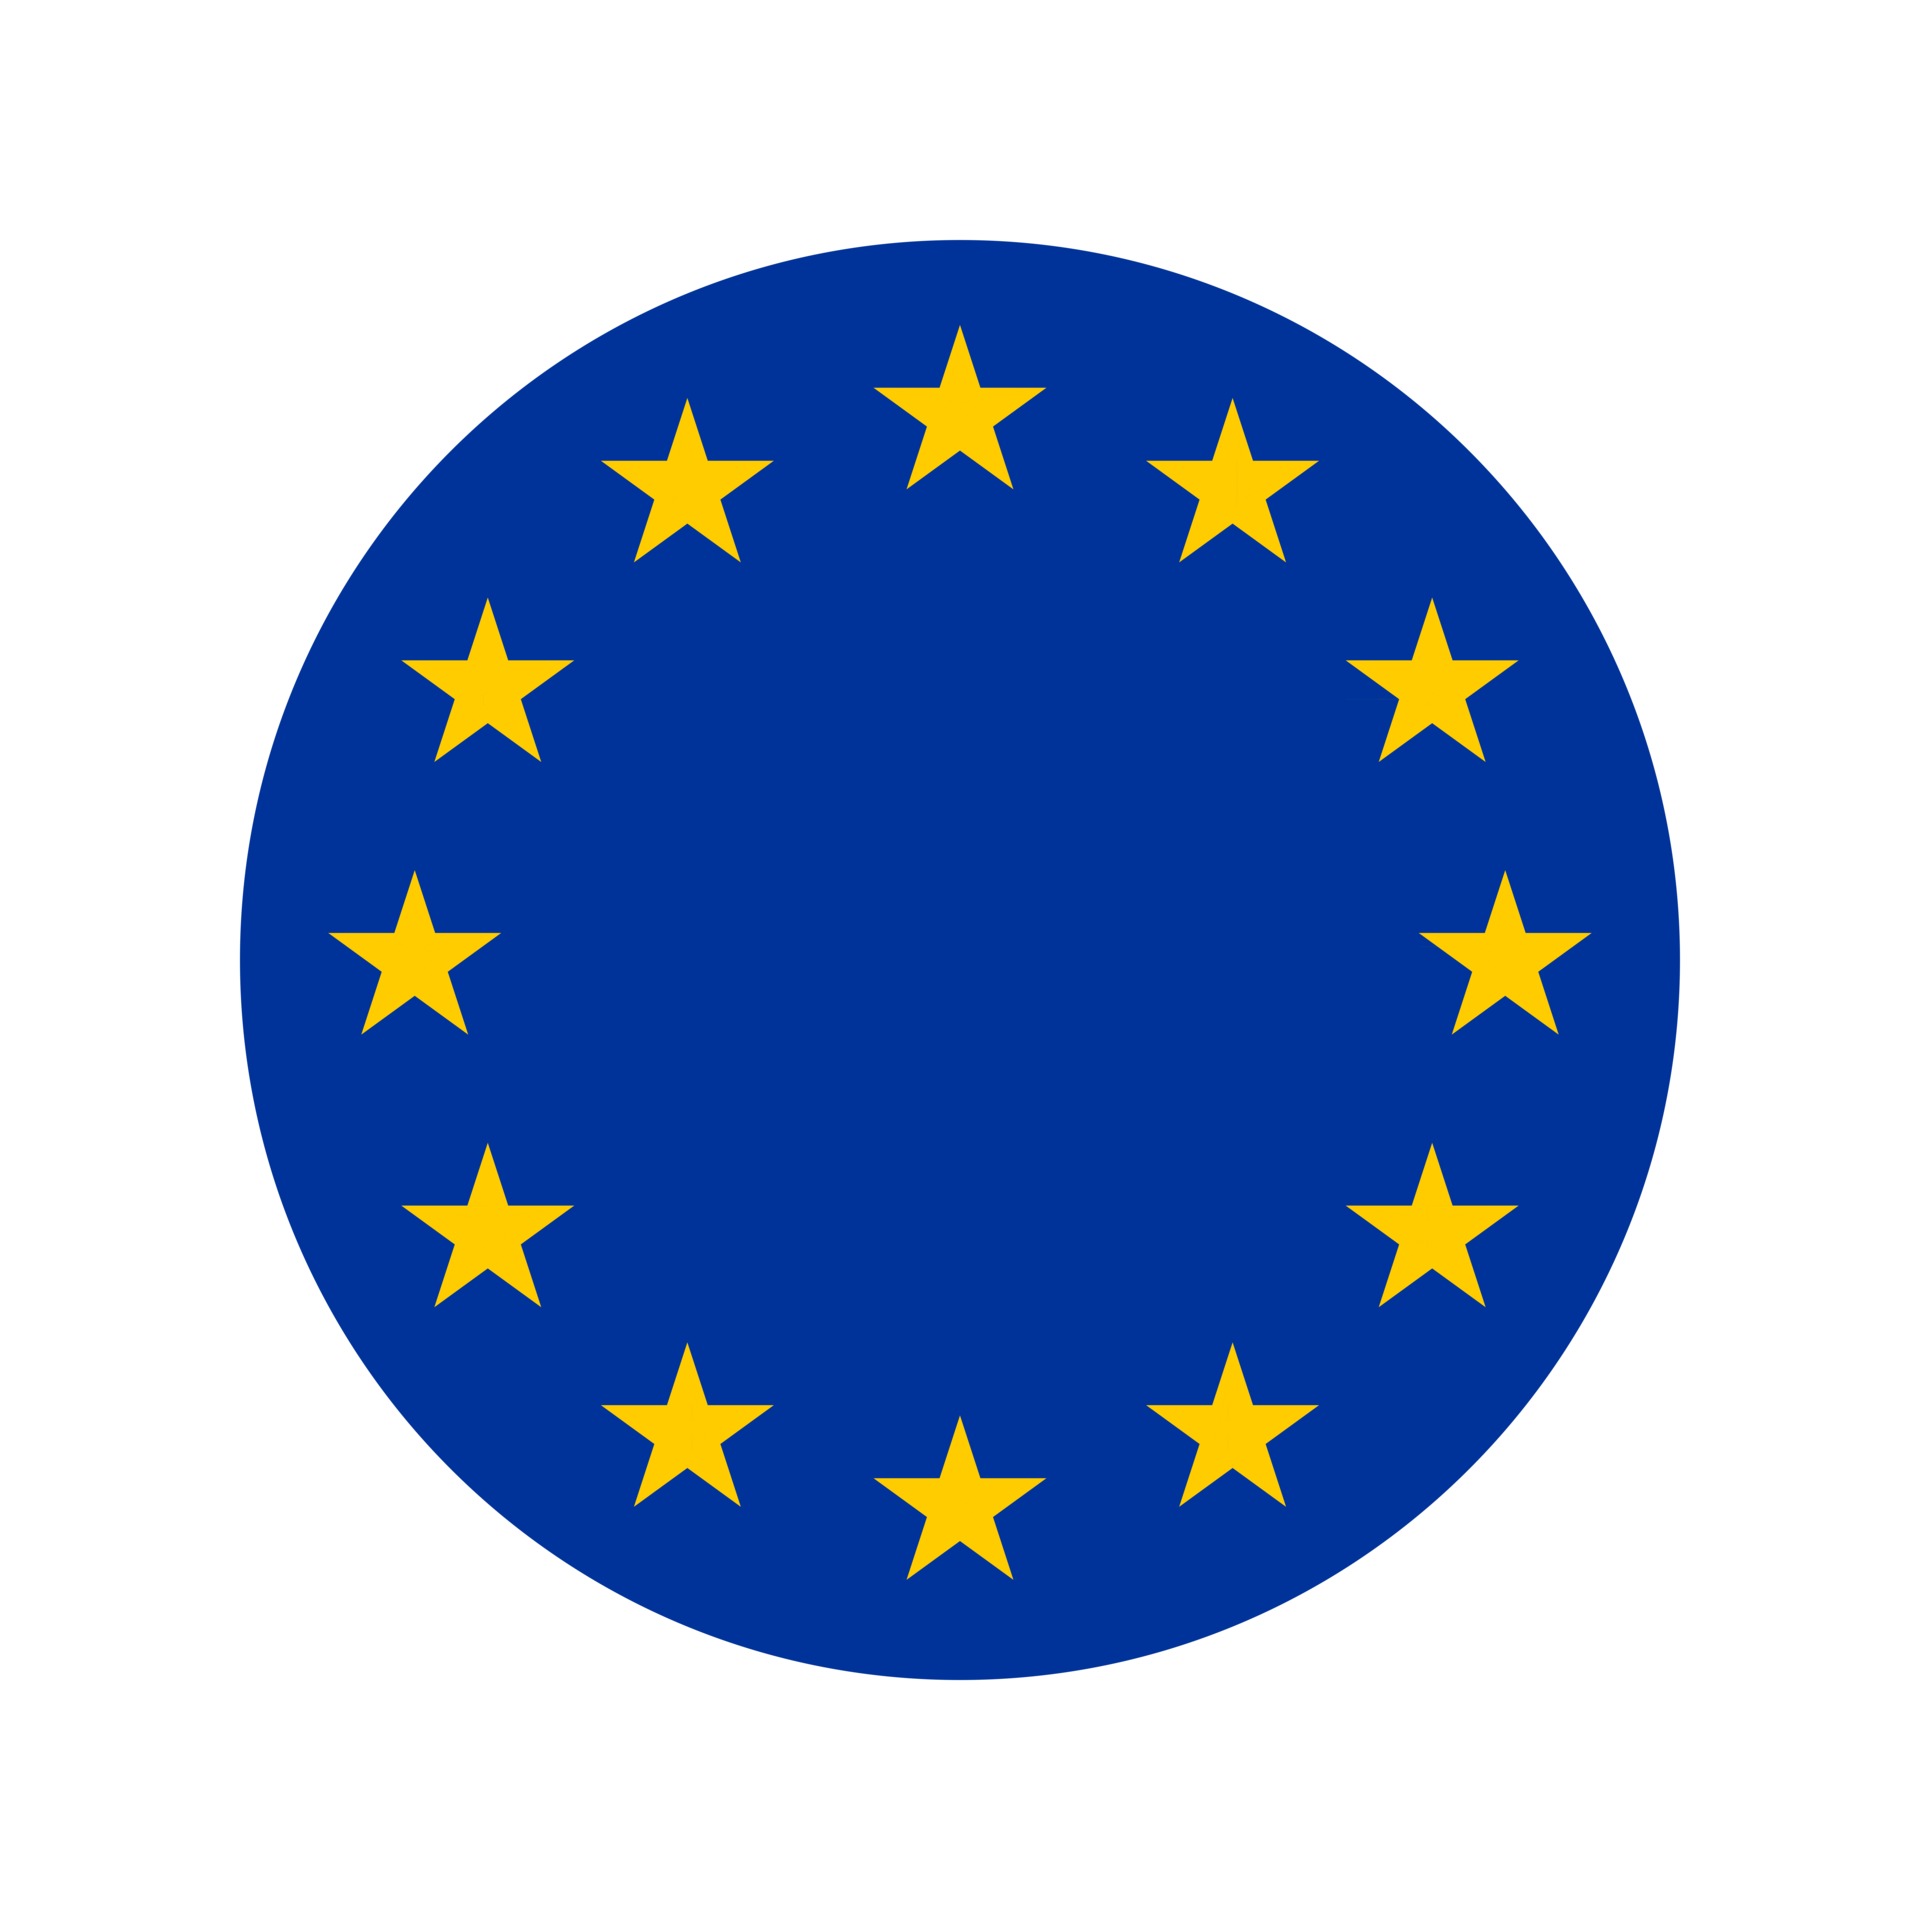 2392799 icona arrotondata della bandiera dell europa bandiera europea vettore isolato con conservazione di colori e proporzioni standard adatte per la stampa siti banner illustrazioni vettoriale